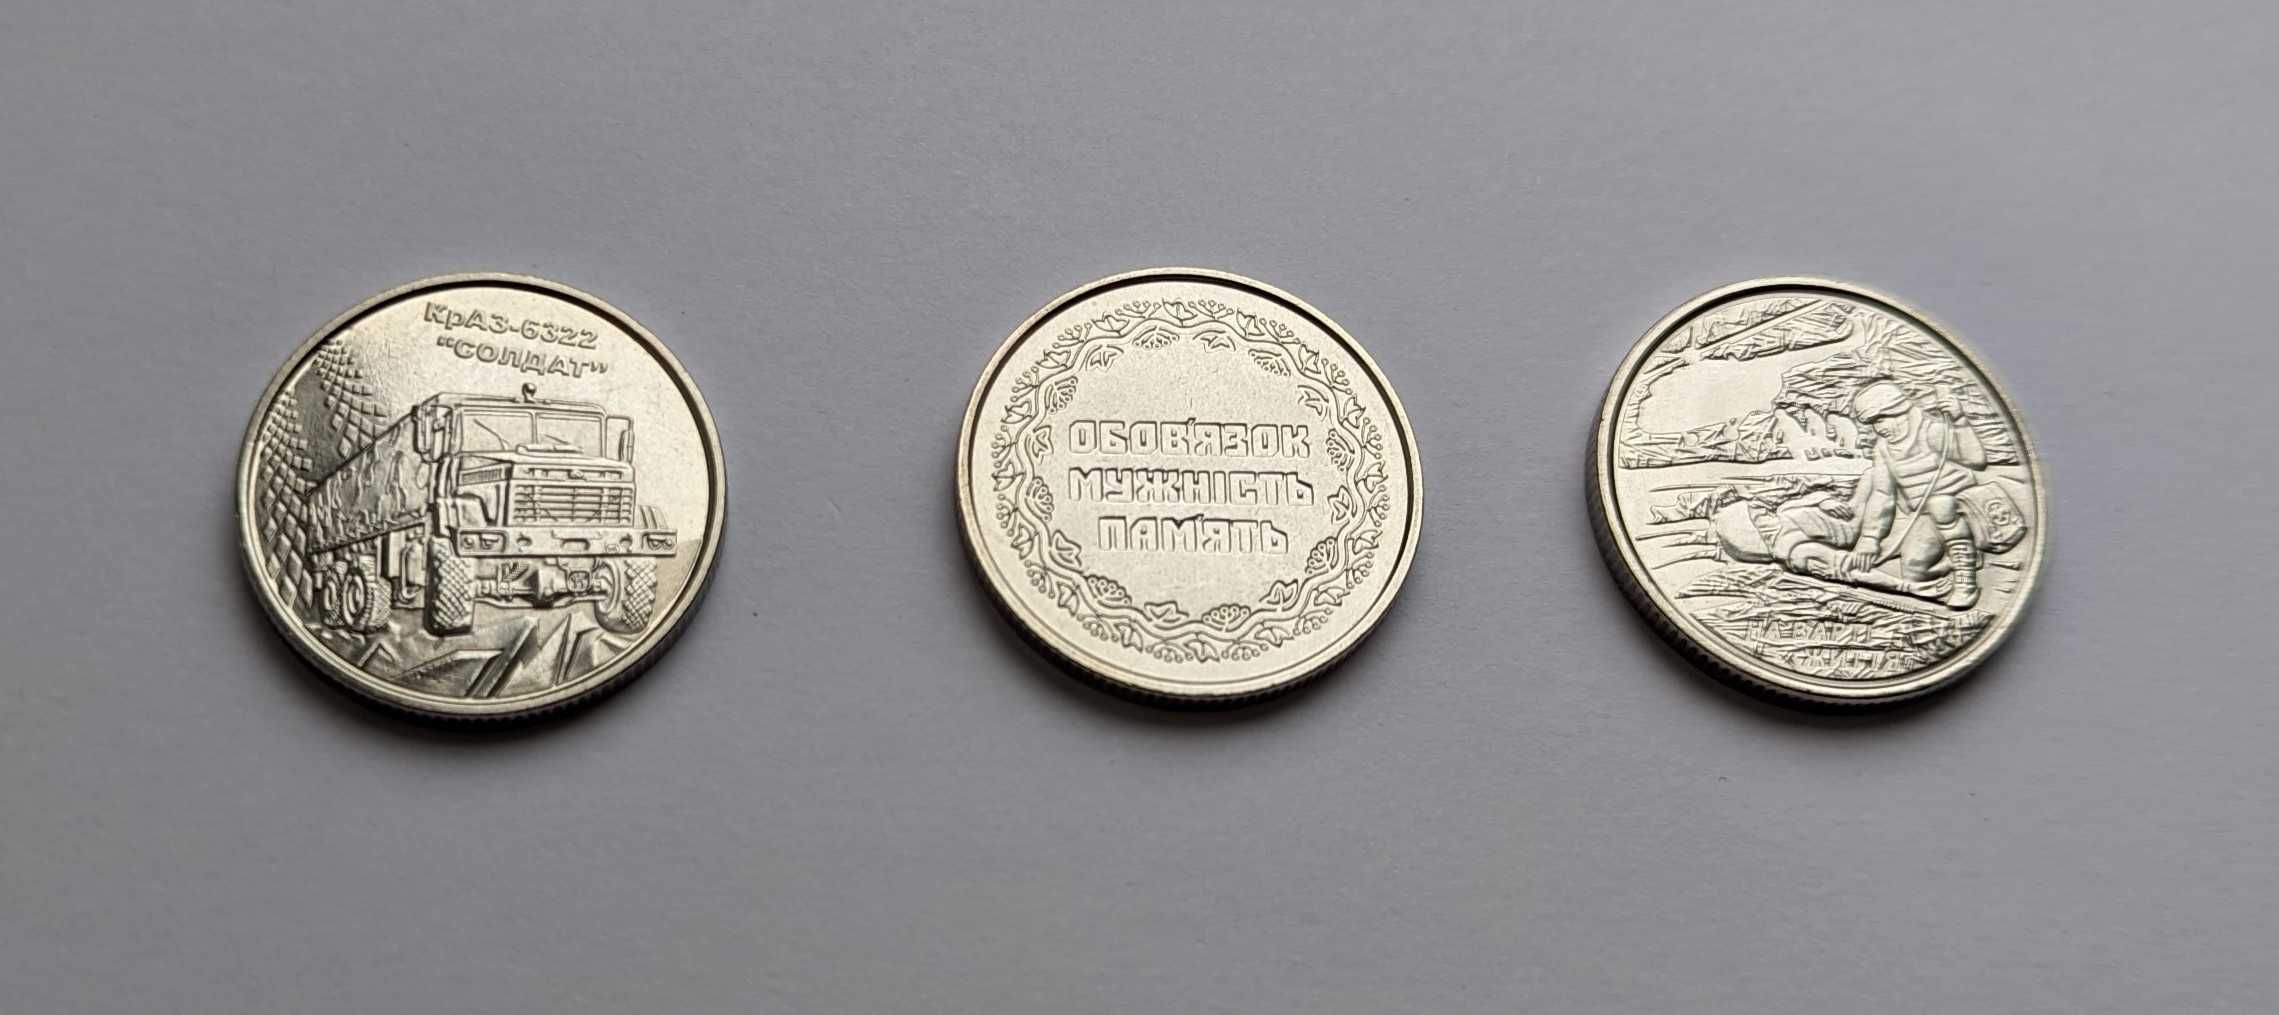 НБУ ЗСУ монети 10 грн. різних років